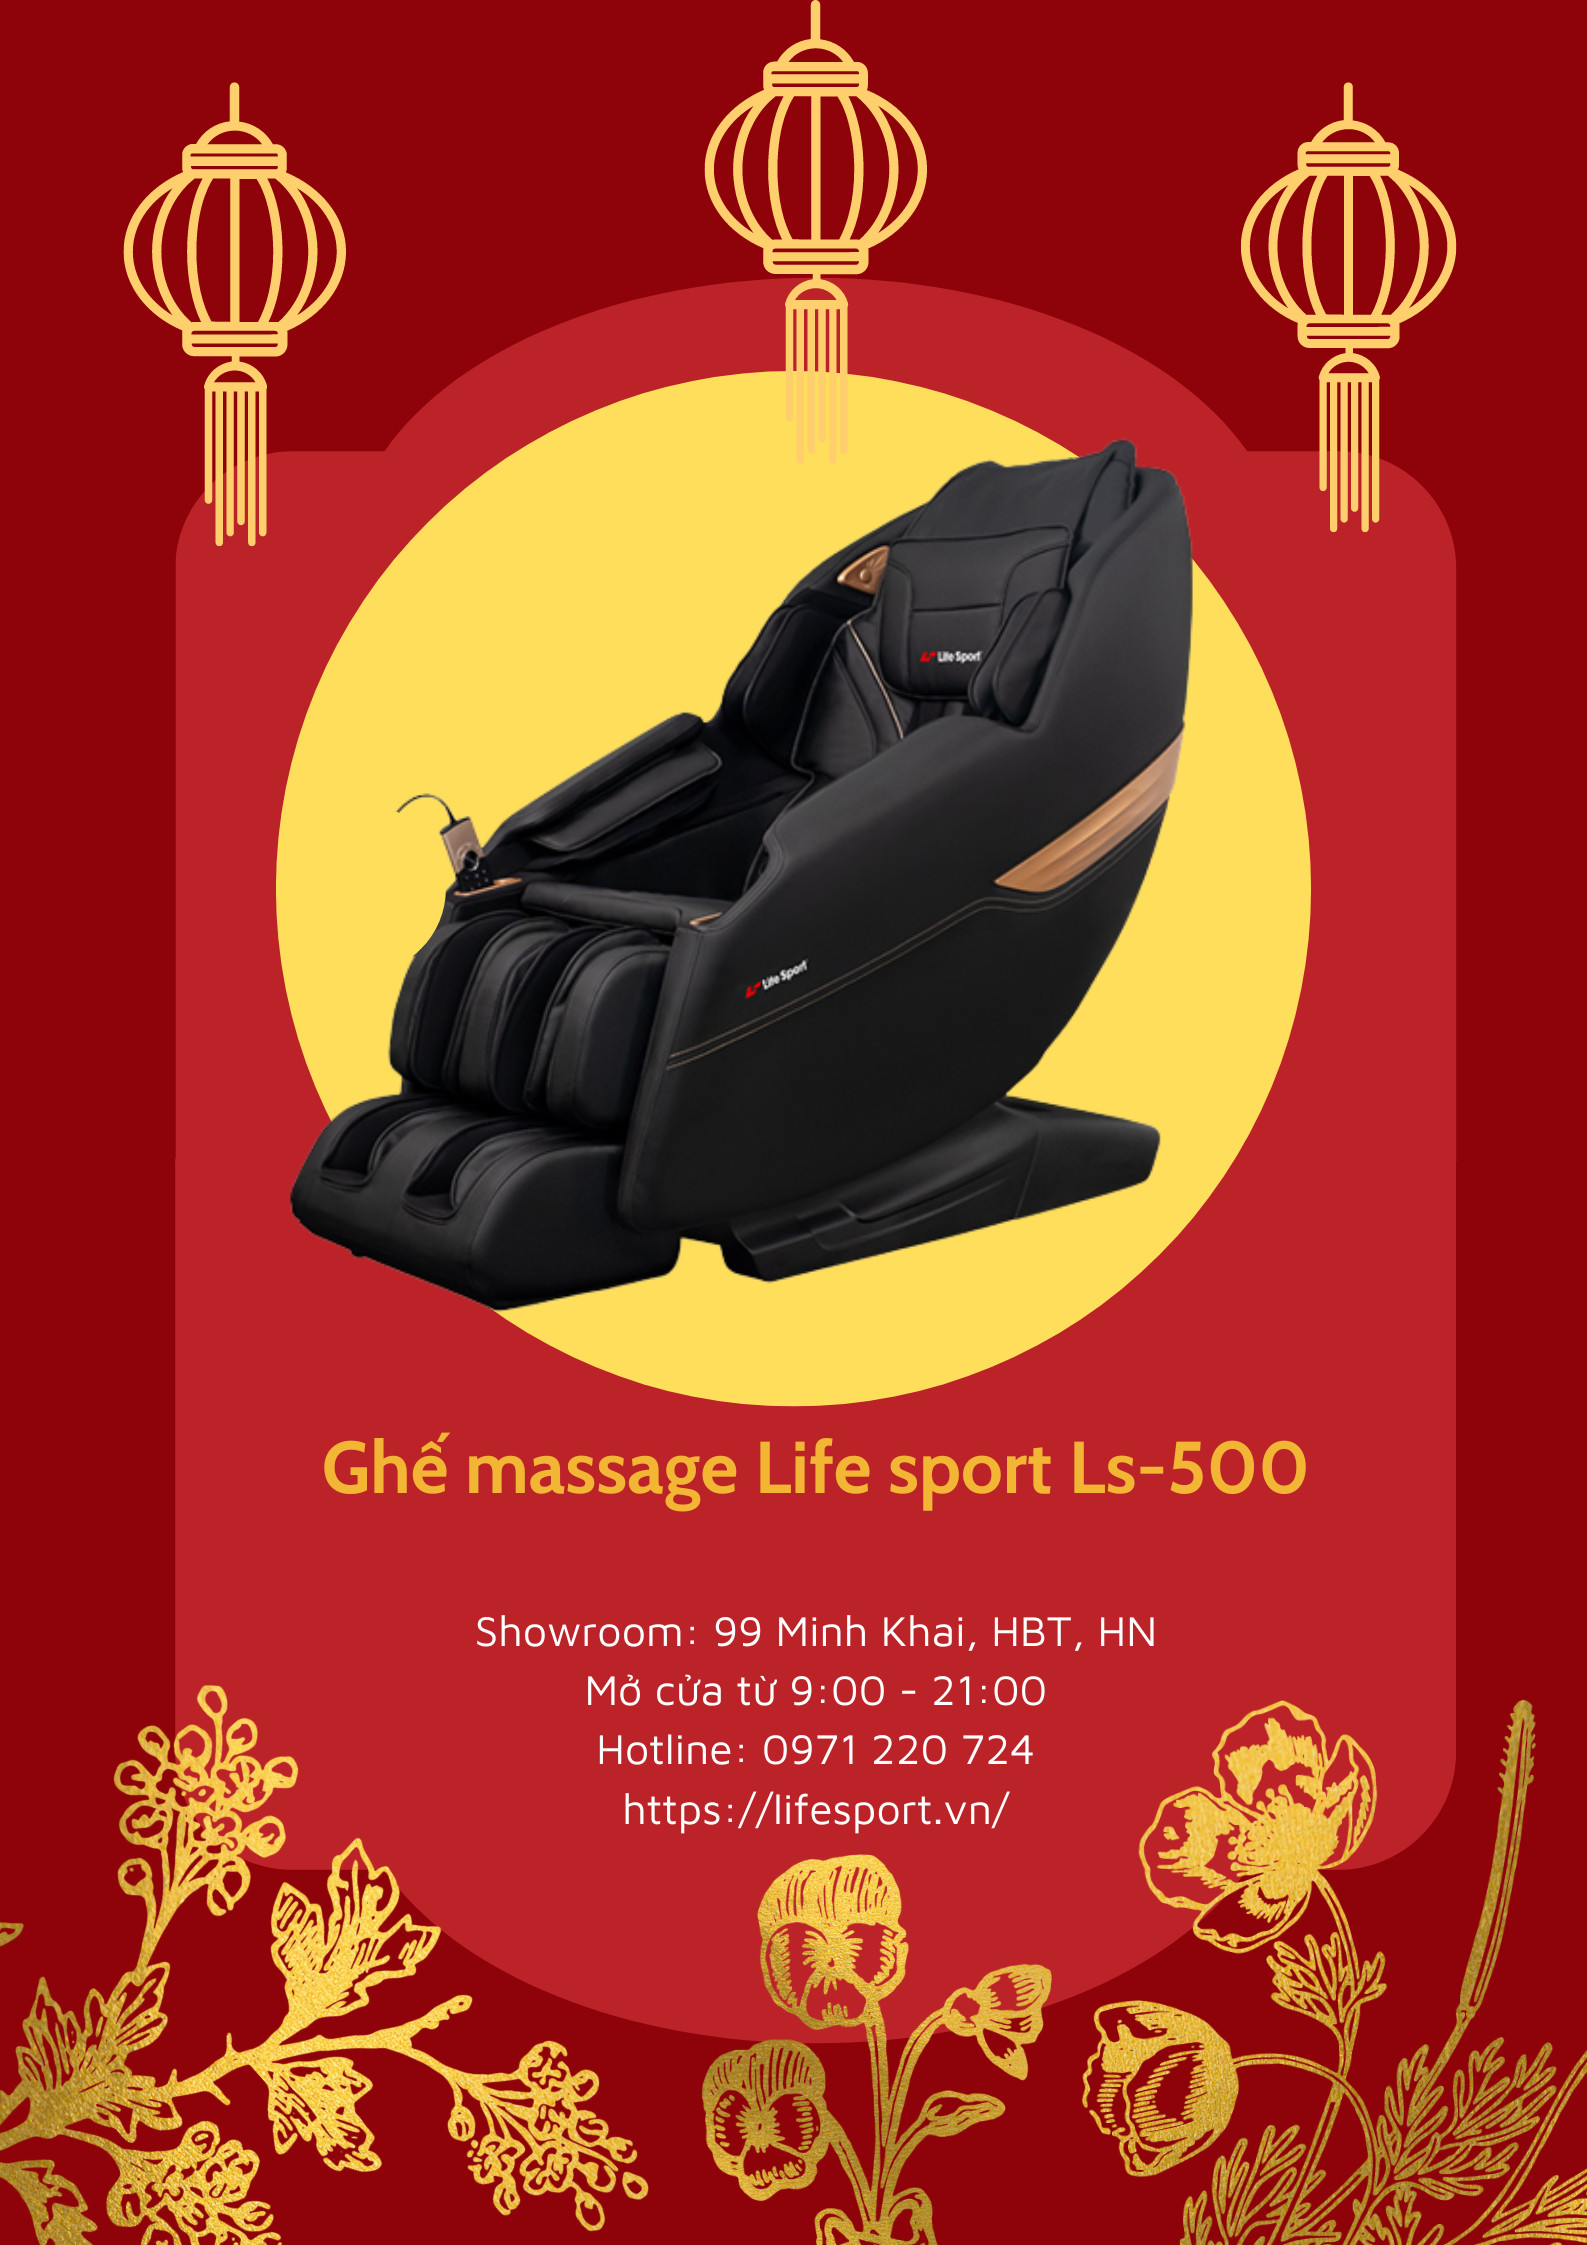 Ghế massage LS-500 sale lớn giá chạm đỉnh quà trao tay